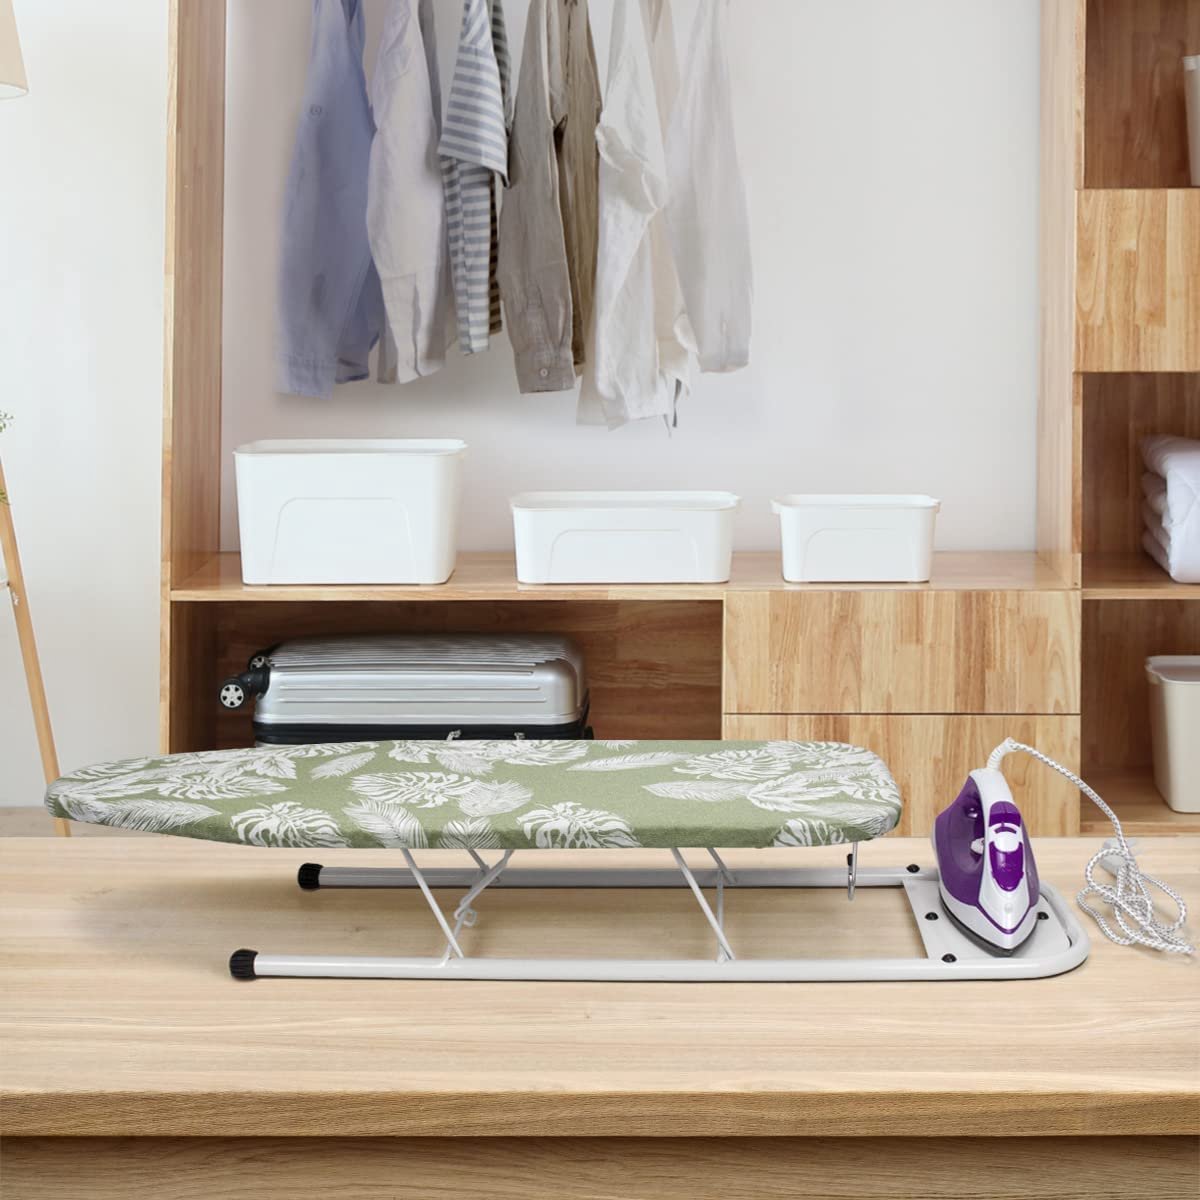 Kleine strijkplank met strijkijzersteun, tafelmodel strijkplank met hittebestendige hoes, compact en lichtgewicht ontwerp, wit, 32x82cm